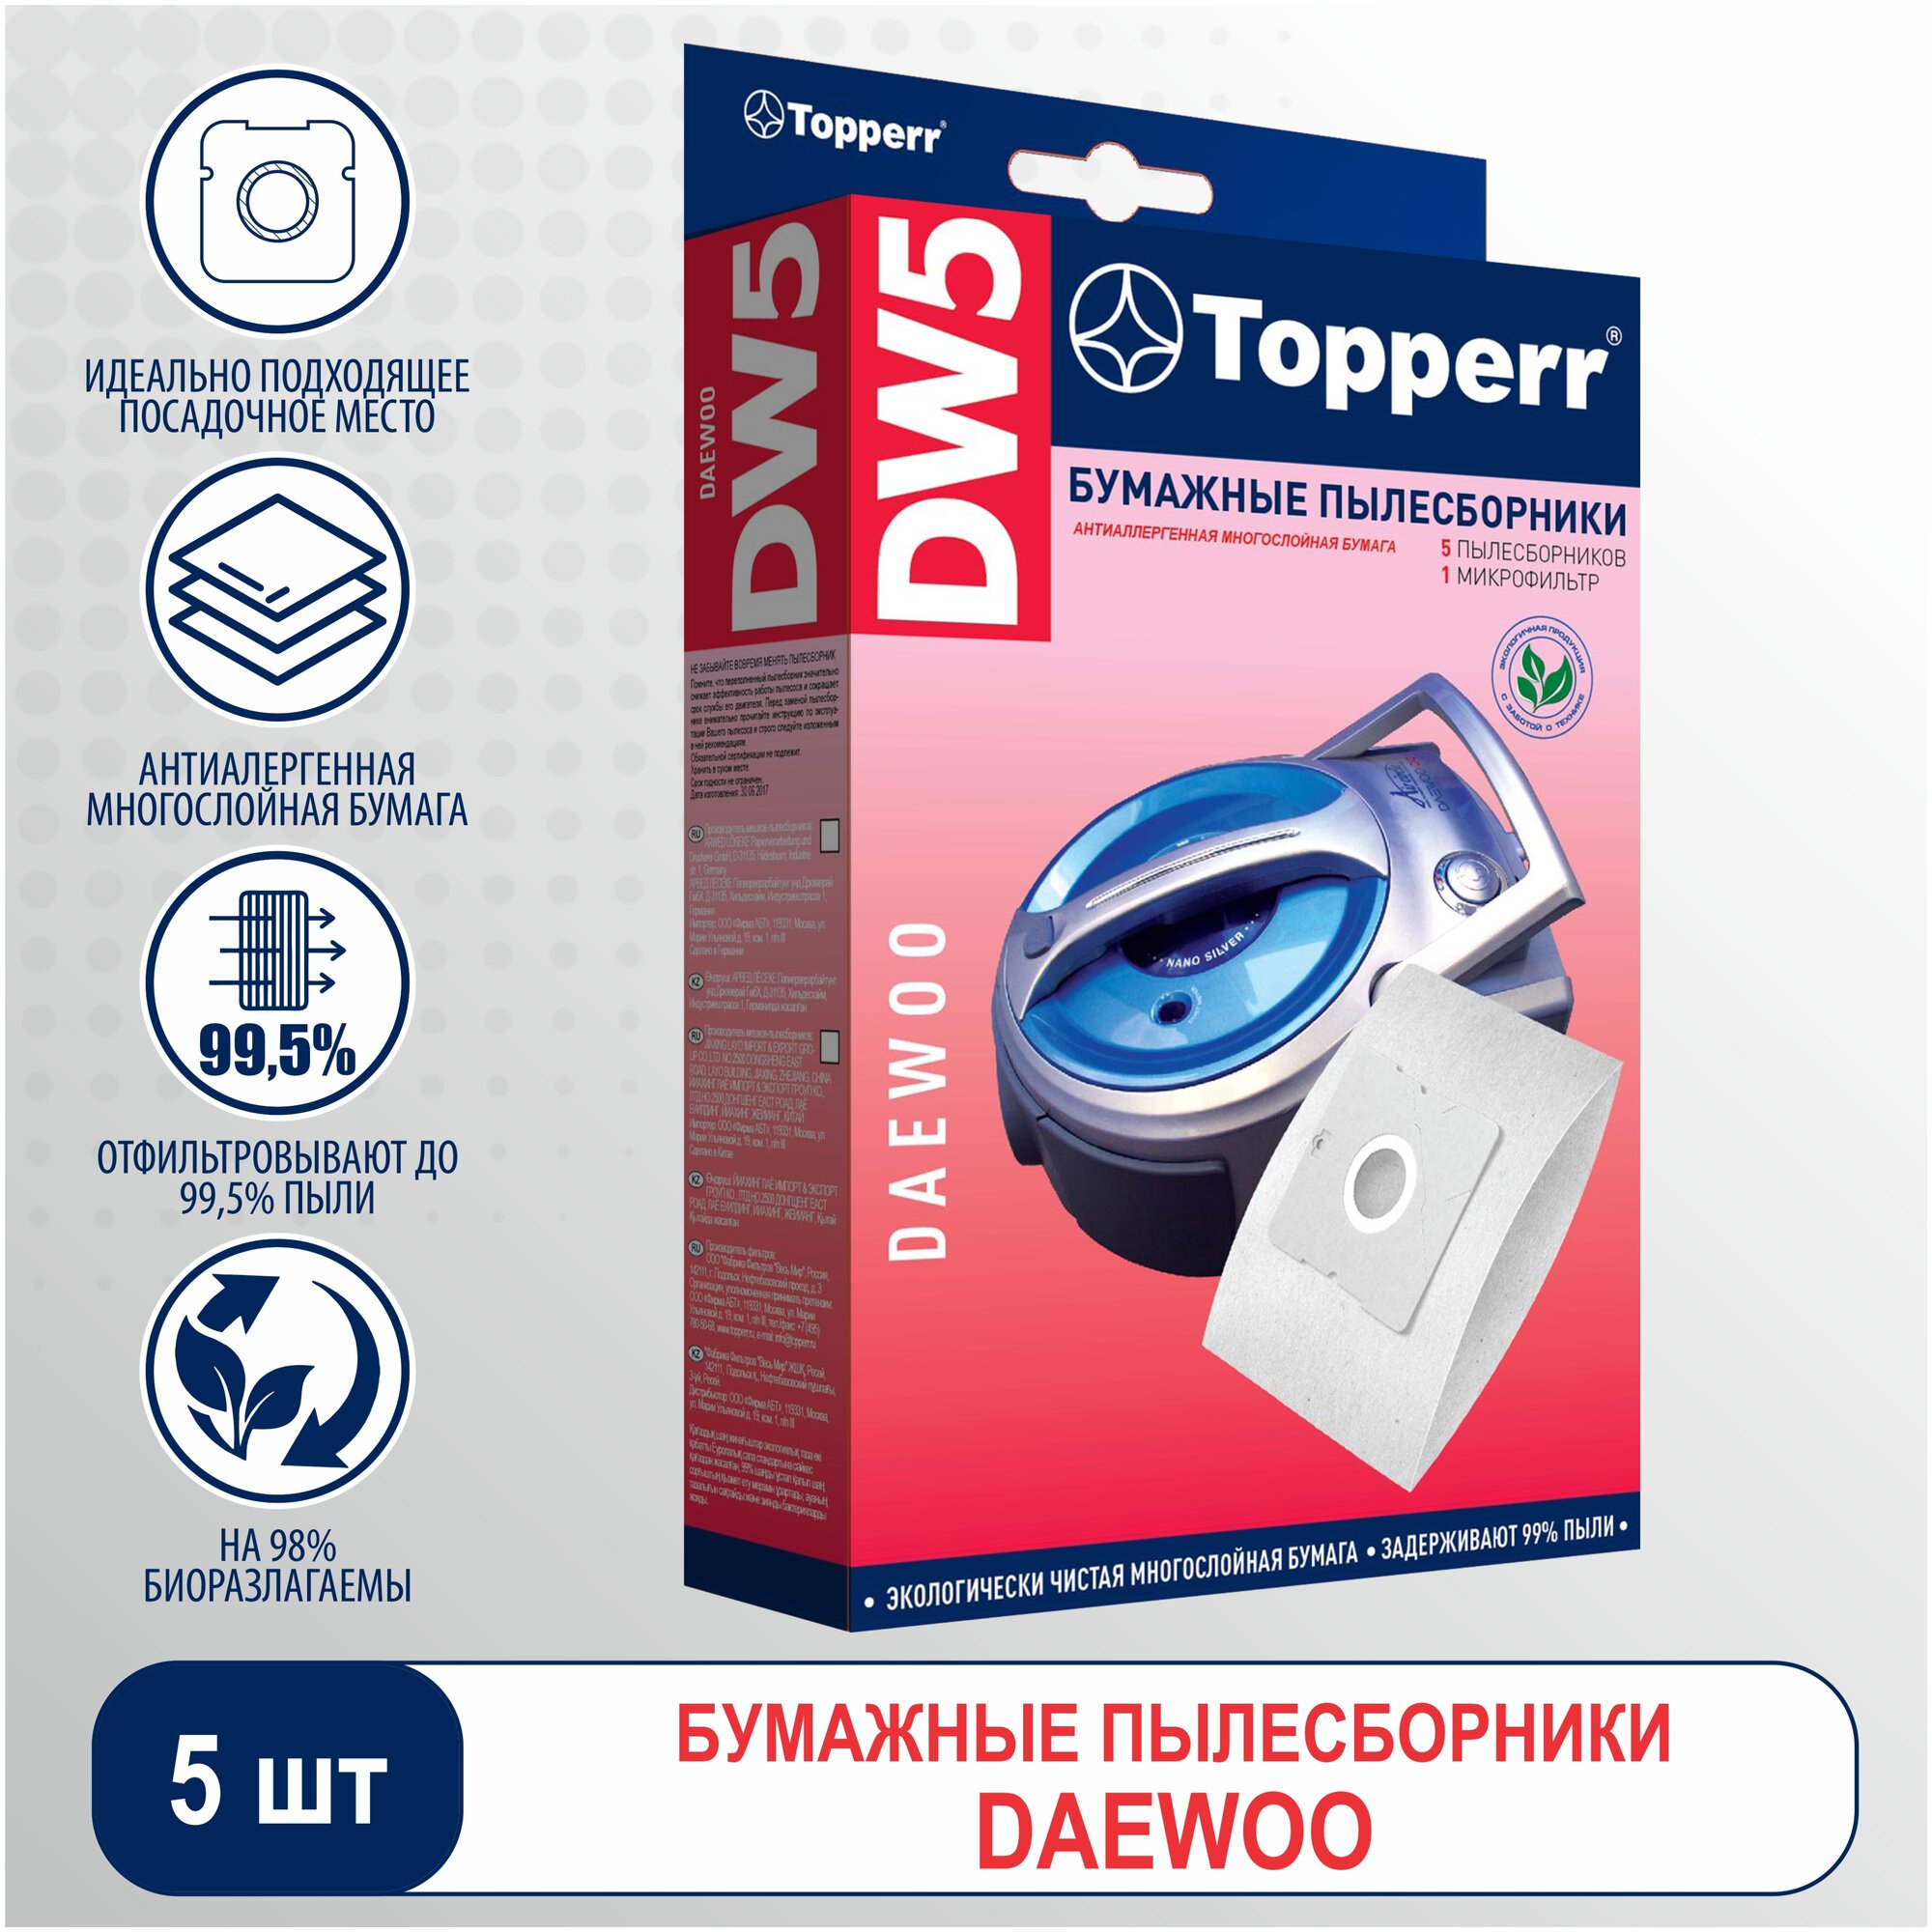 (TOPPERR Пылесборники DW5 1004 бумажные (5пылесбор.) (1фильт.))